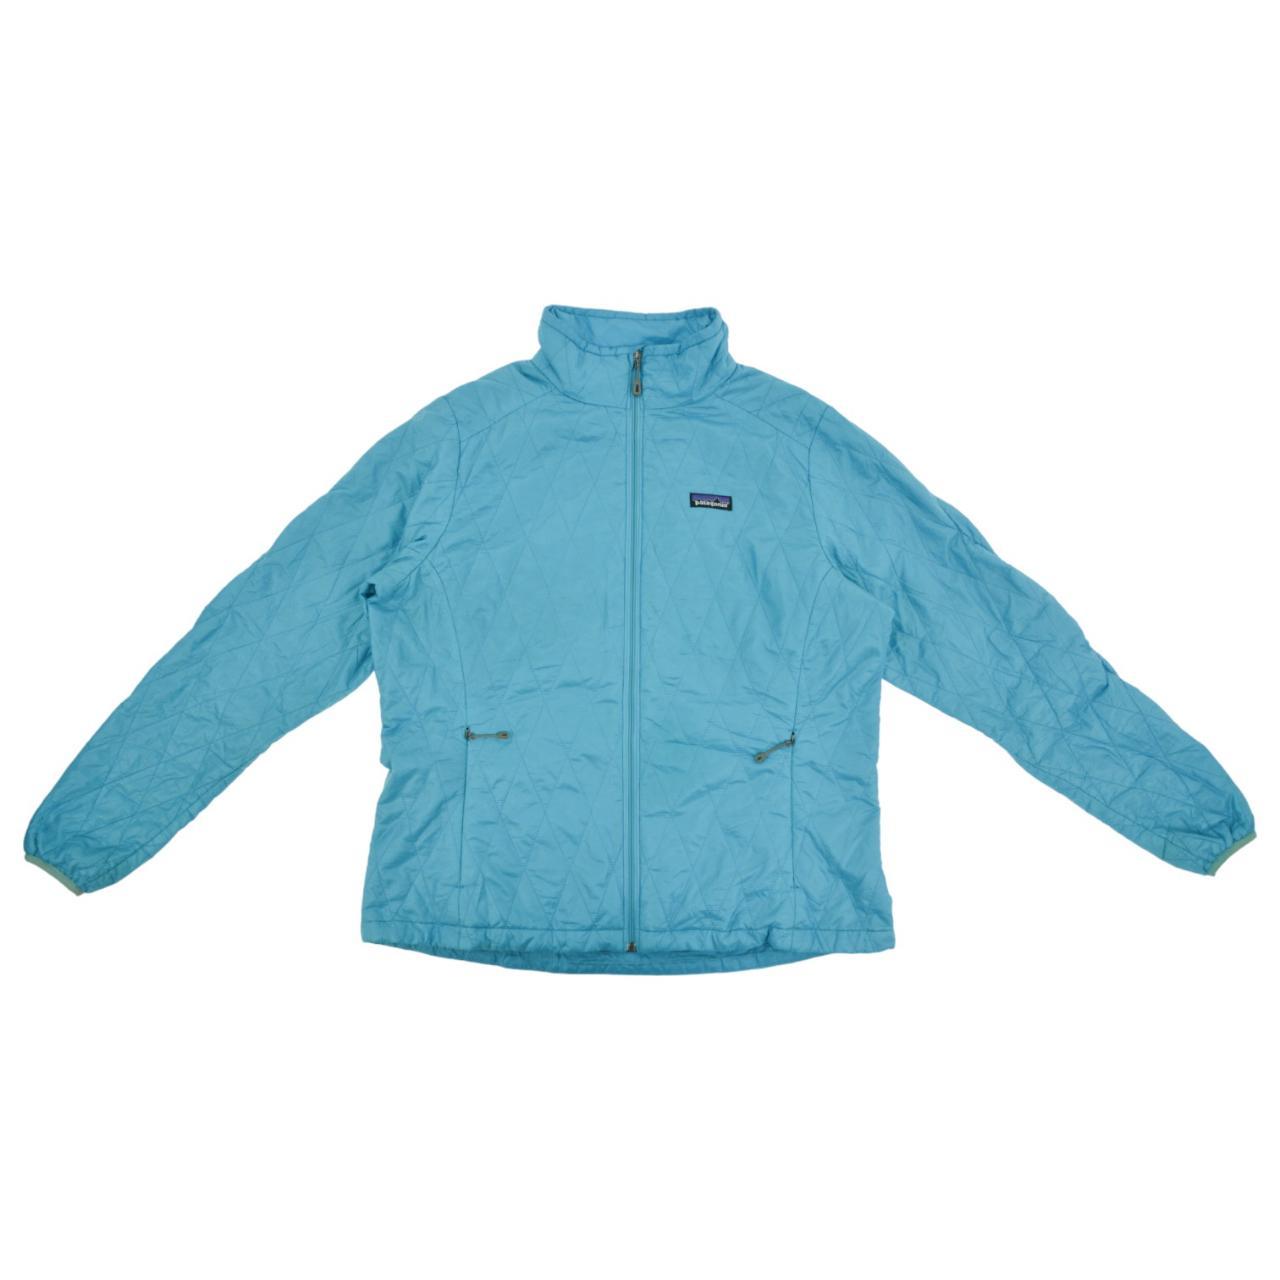 Vintage Patagonia Zip Up Jacket Women's Size XL